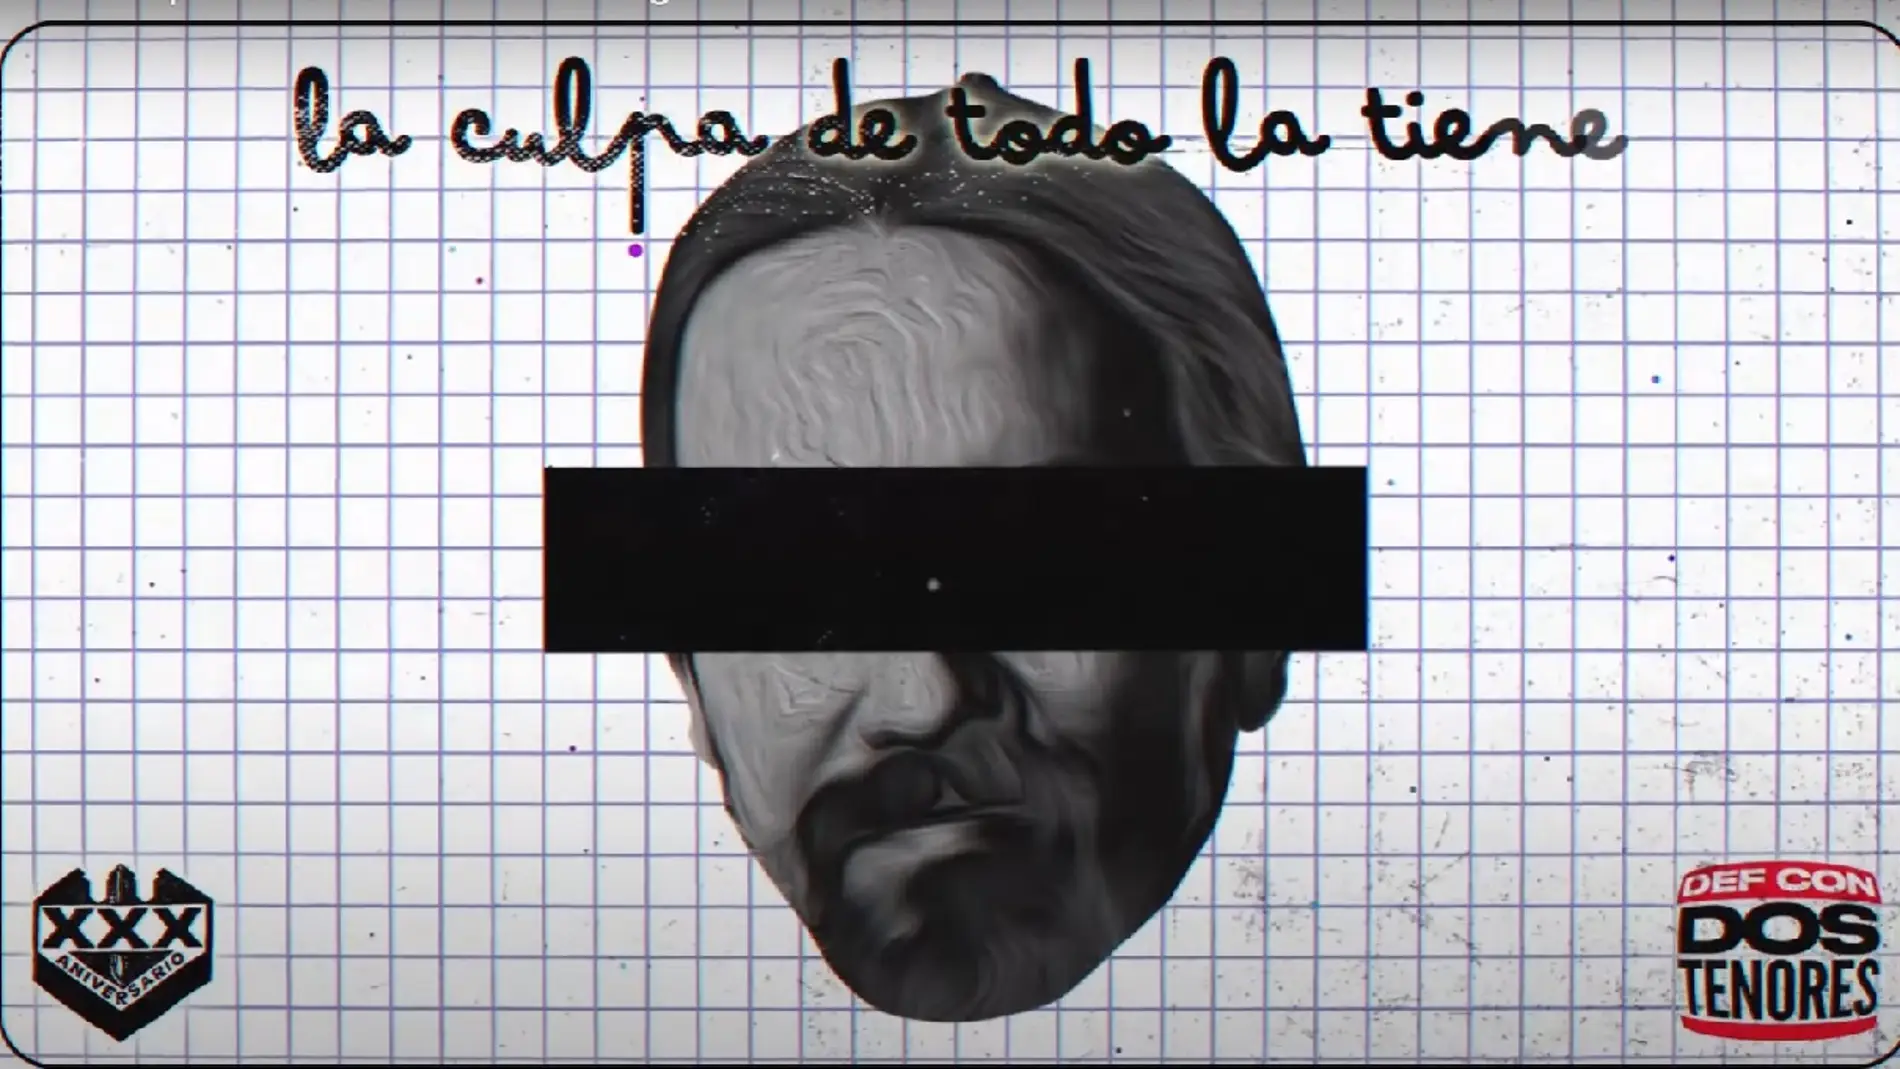 Pablo Iglesias la lía en redes con la nueva canción de 'Def con Dos': "La culpa de todo la tiene Pablo Iglesias"